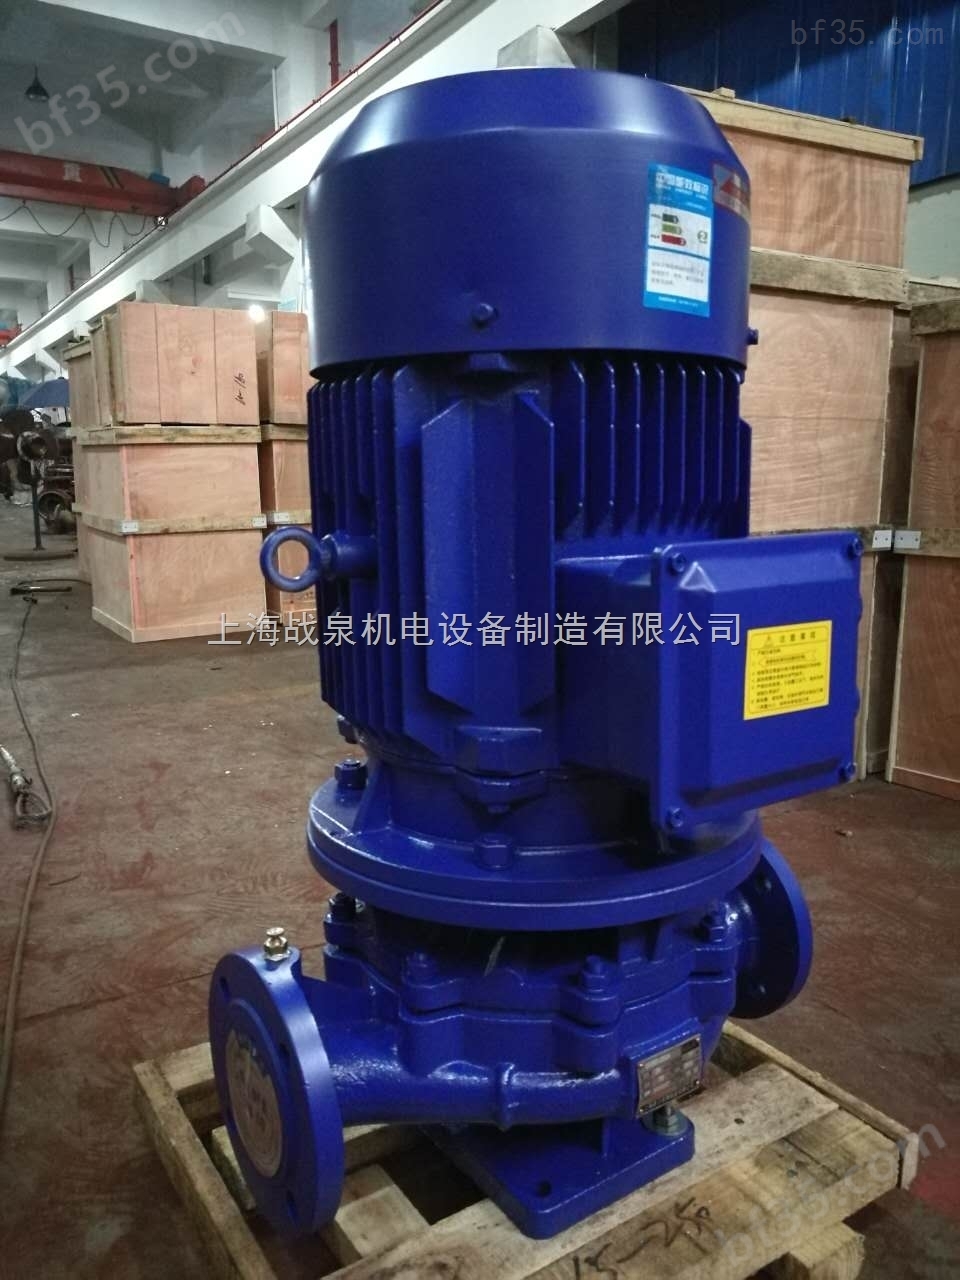 ISG65-160B立式管道离心泵,不锈钢管道离心泵,上海管道泵厂家